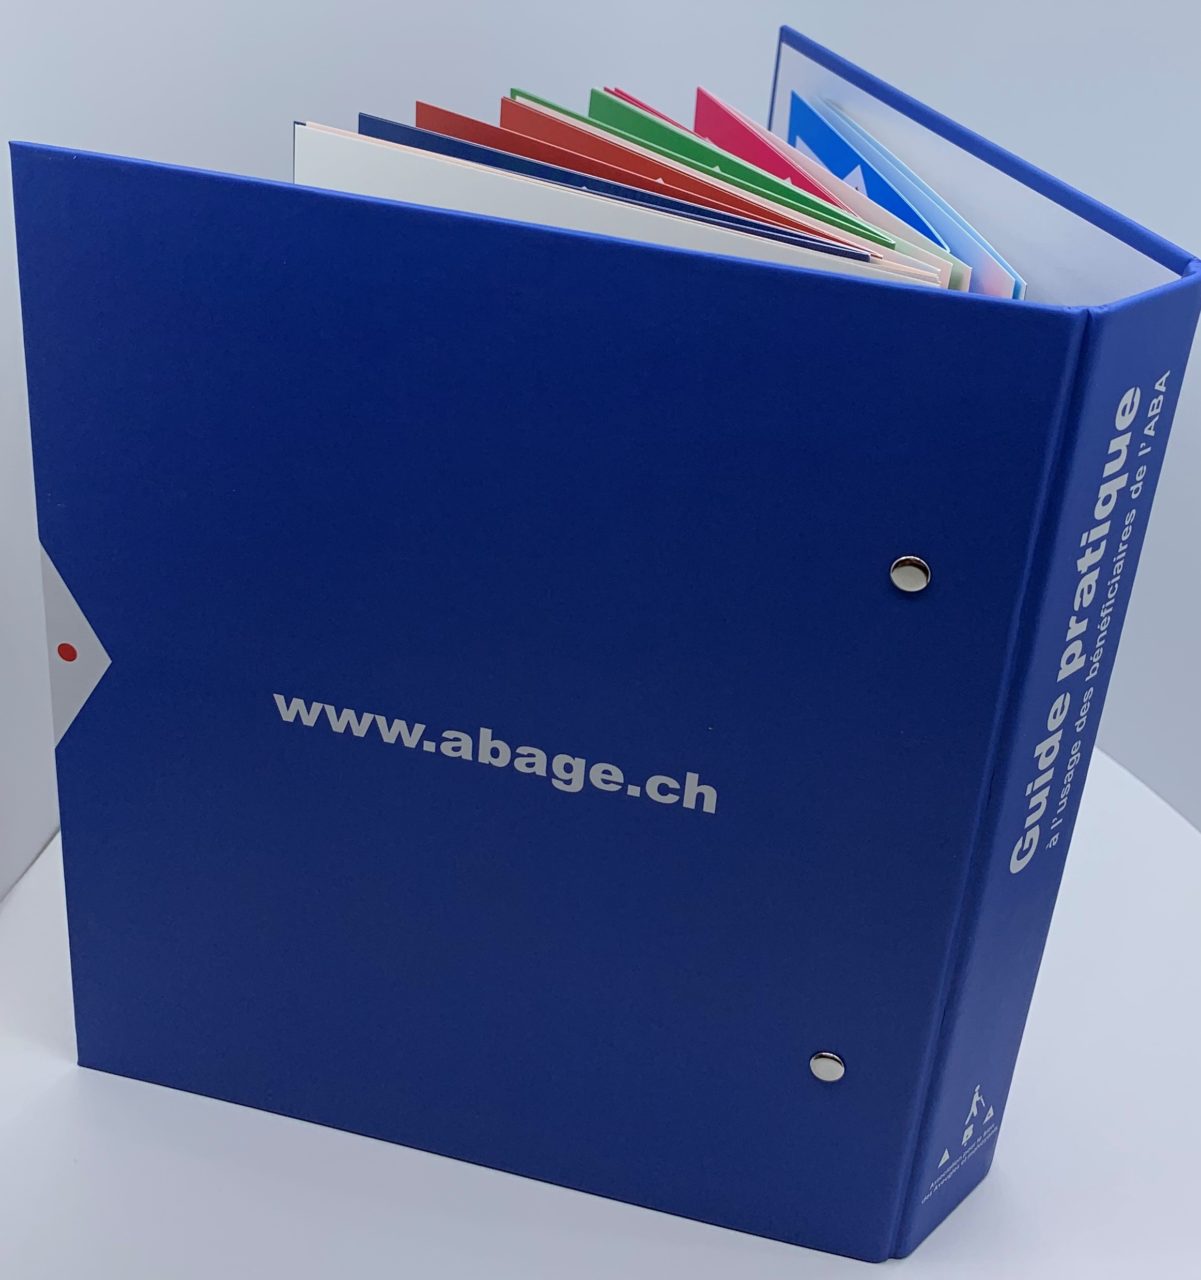 Photo: Le guide pratique à l'usage des bénéficiaires de l'ABA est présenté sous la forme d'un classeur.